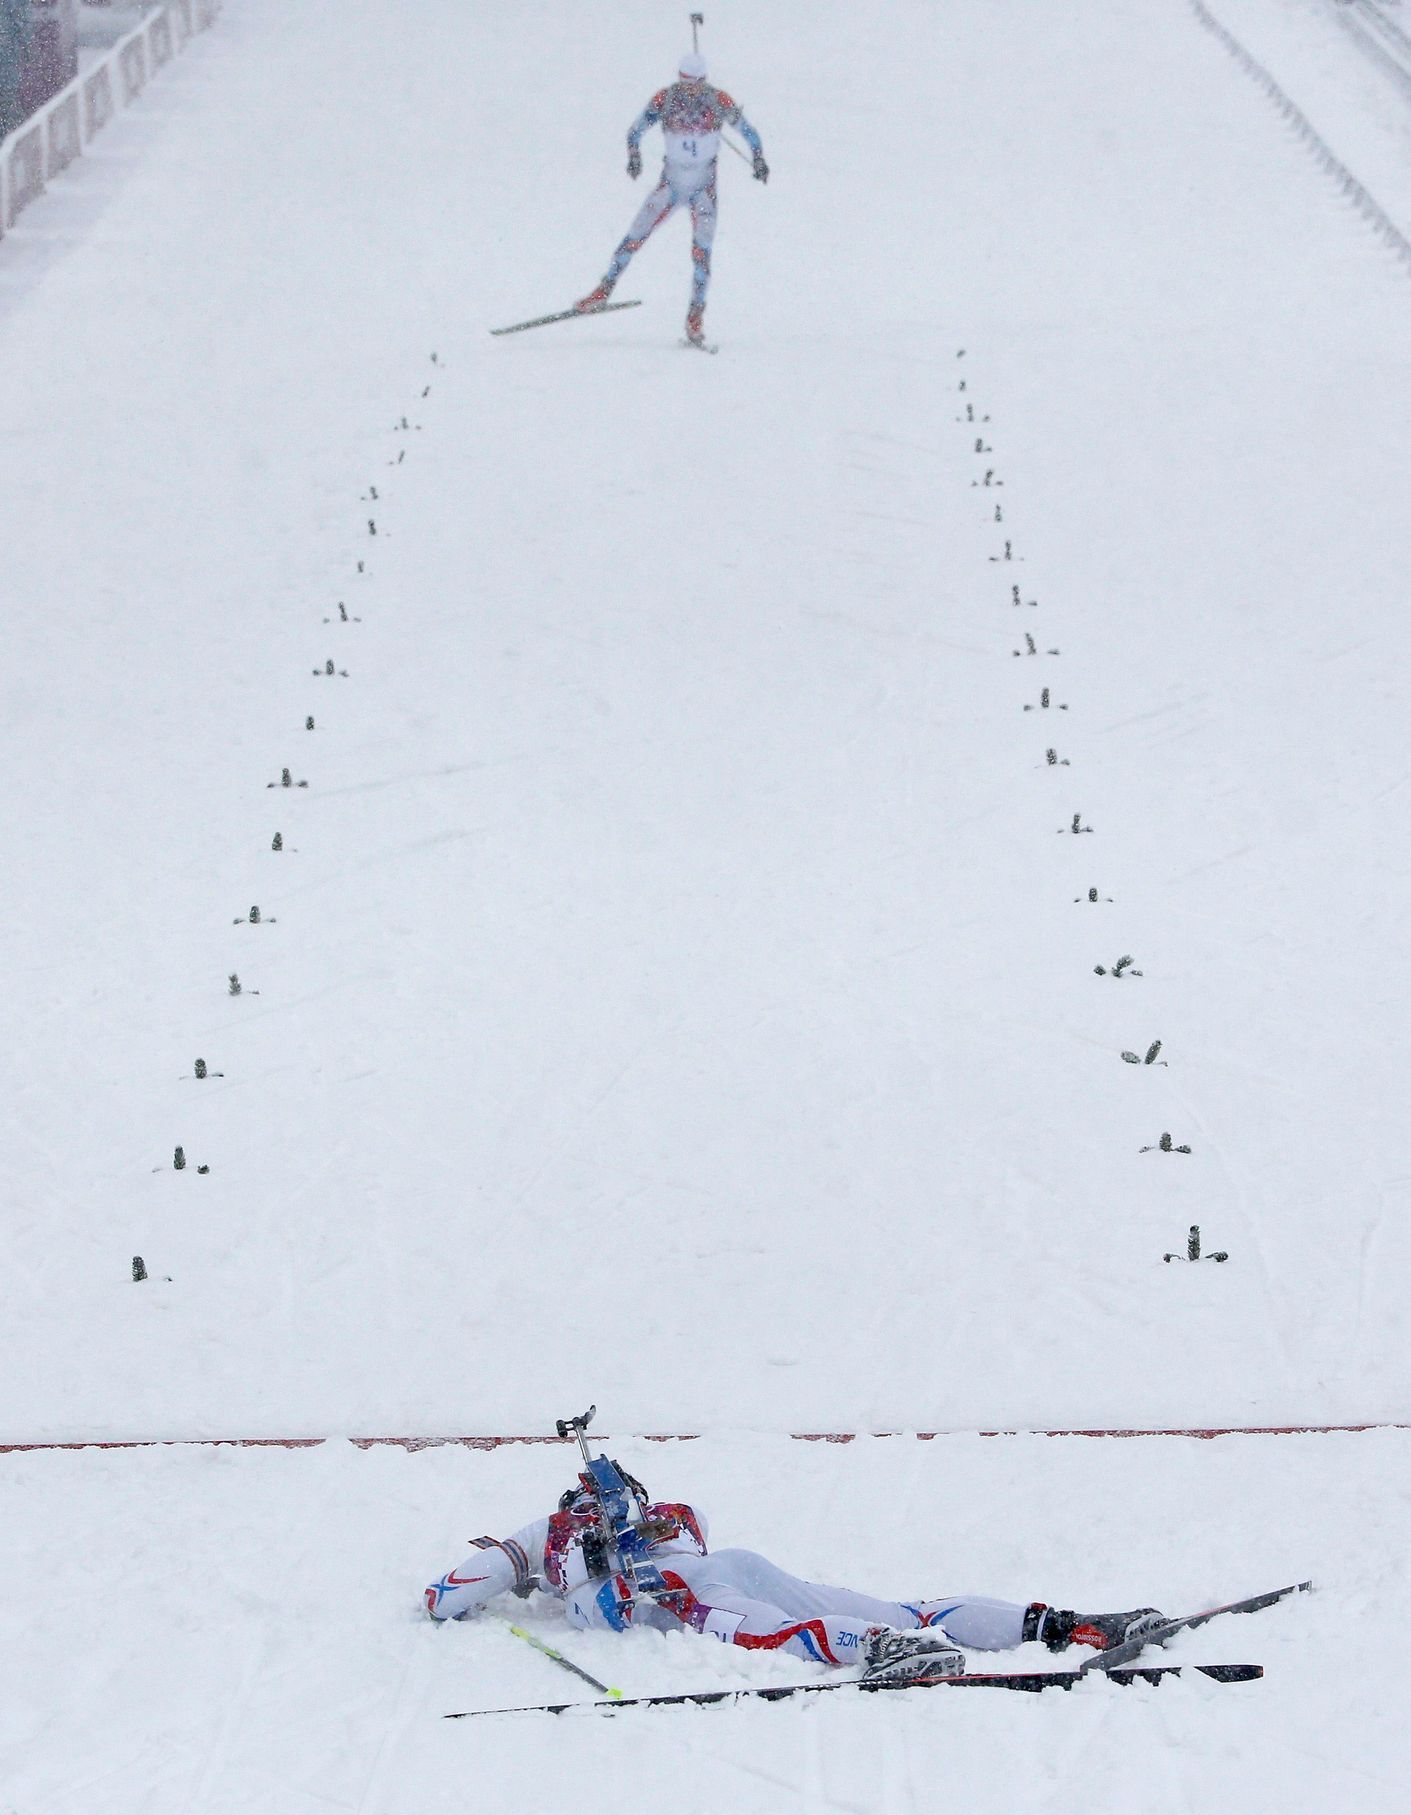 Soči 2014, biatlon hromadný start M: Martin Fourcade (vpředu) a Ondřej Moravec